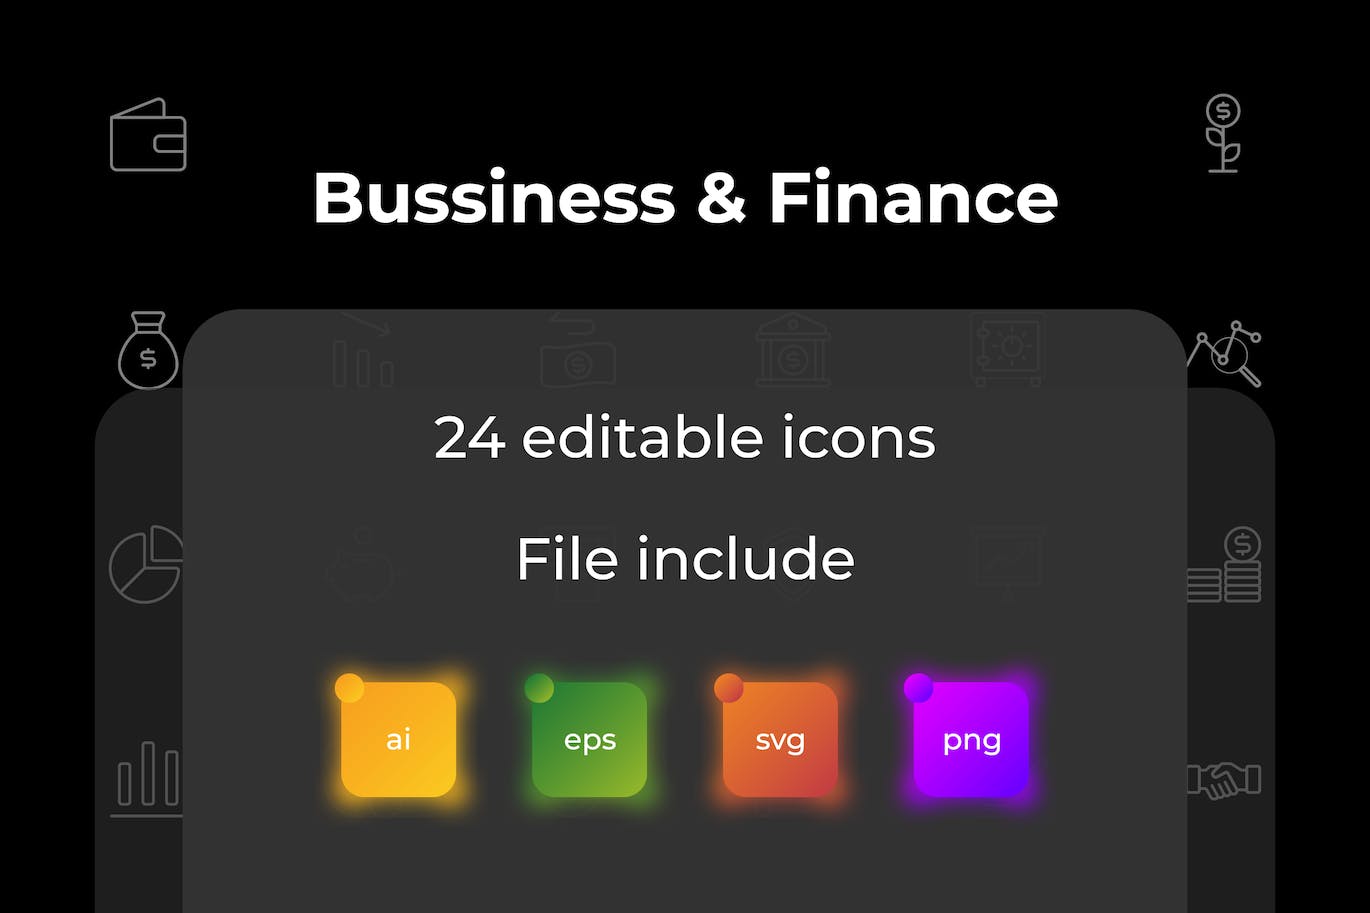 商业和金融图标集 Business and Finance Outline Icon Set 图标素材 第1张